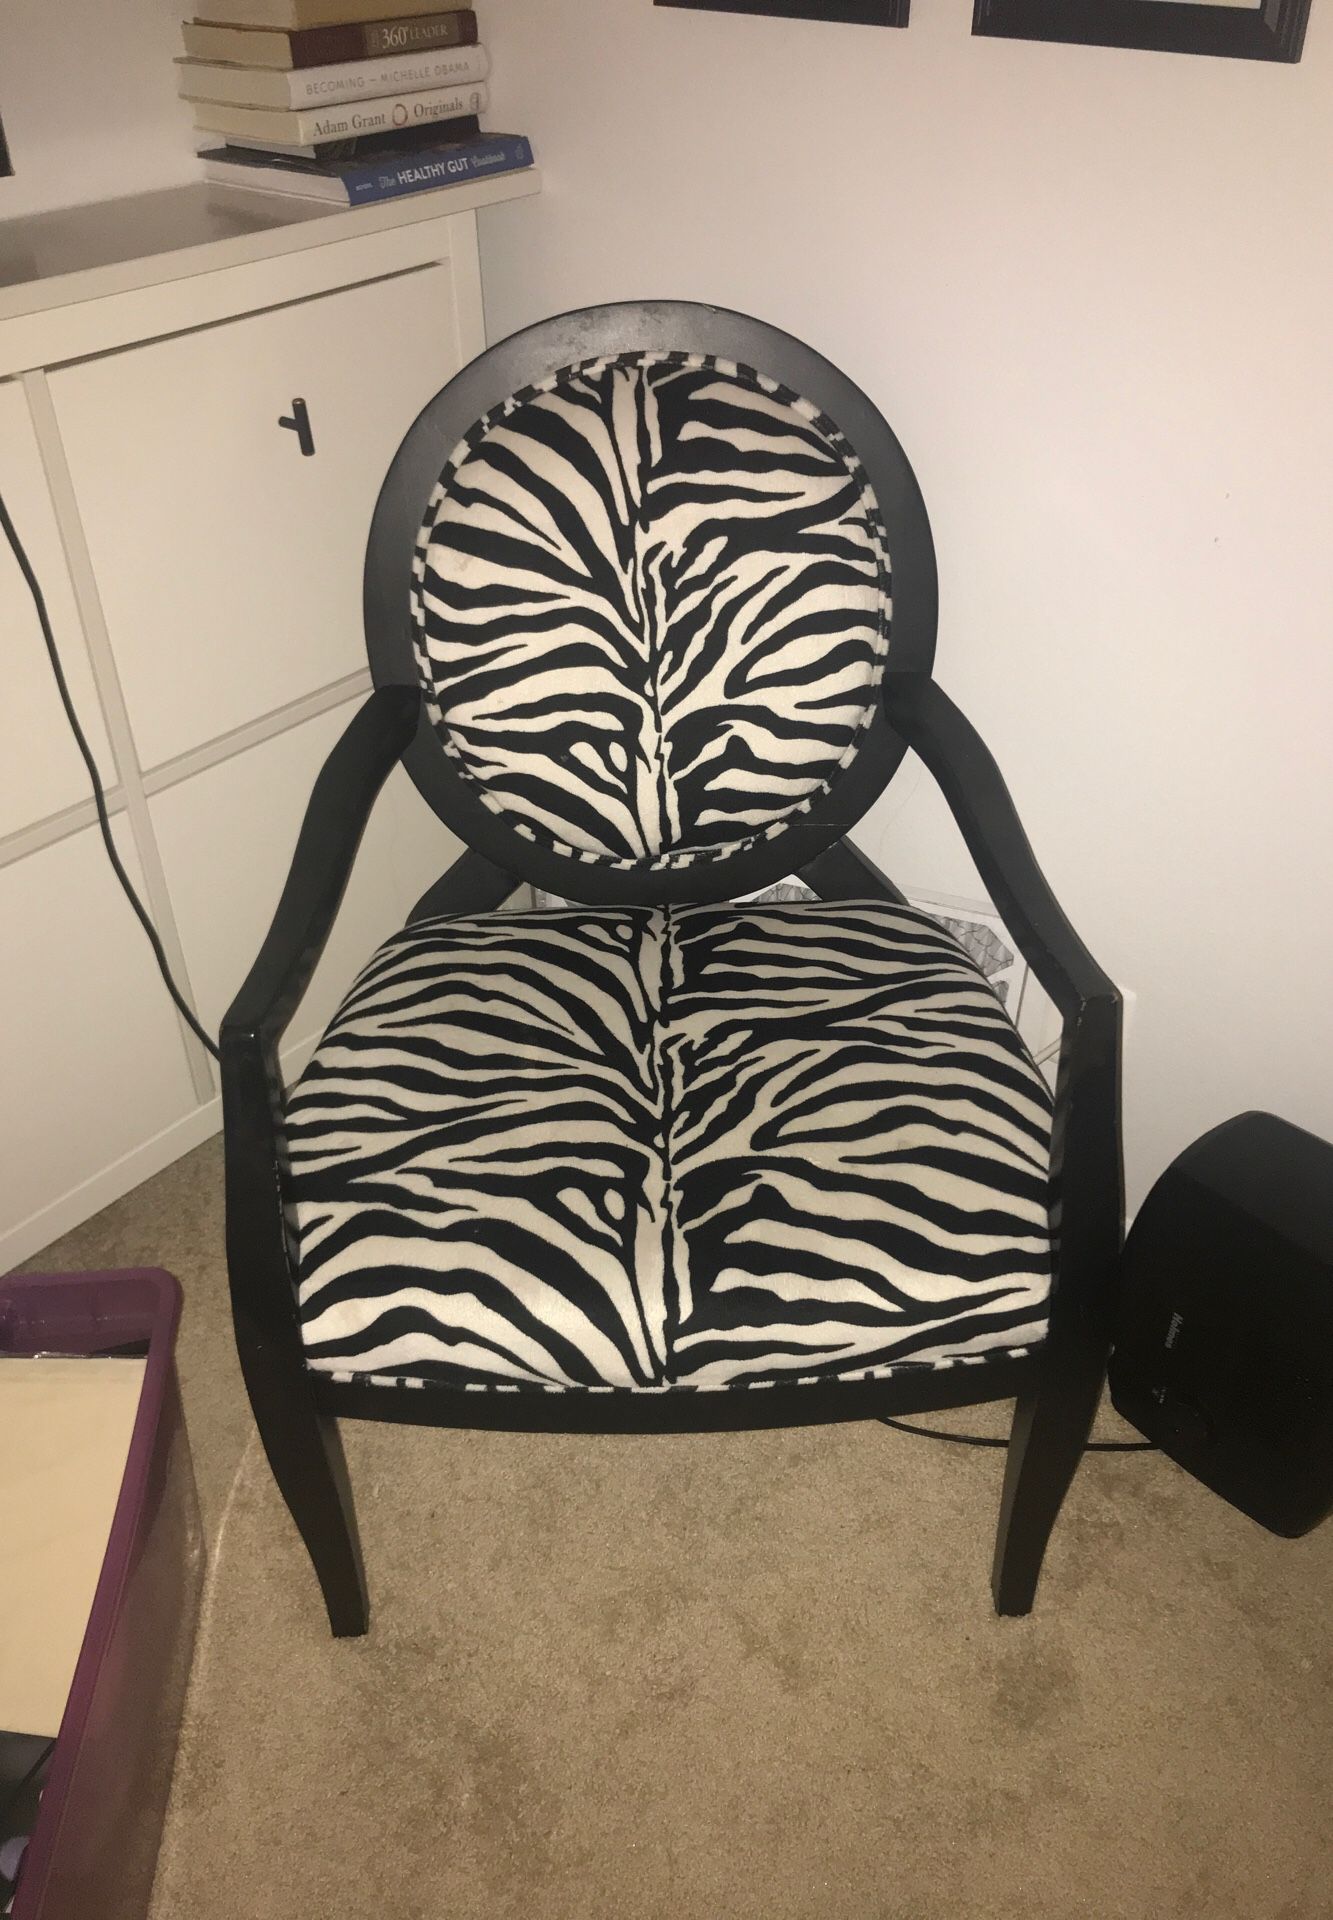 Zebra chair $30